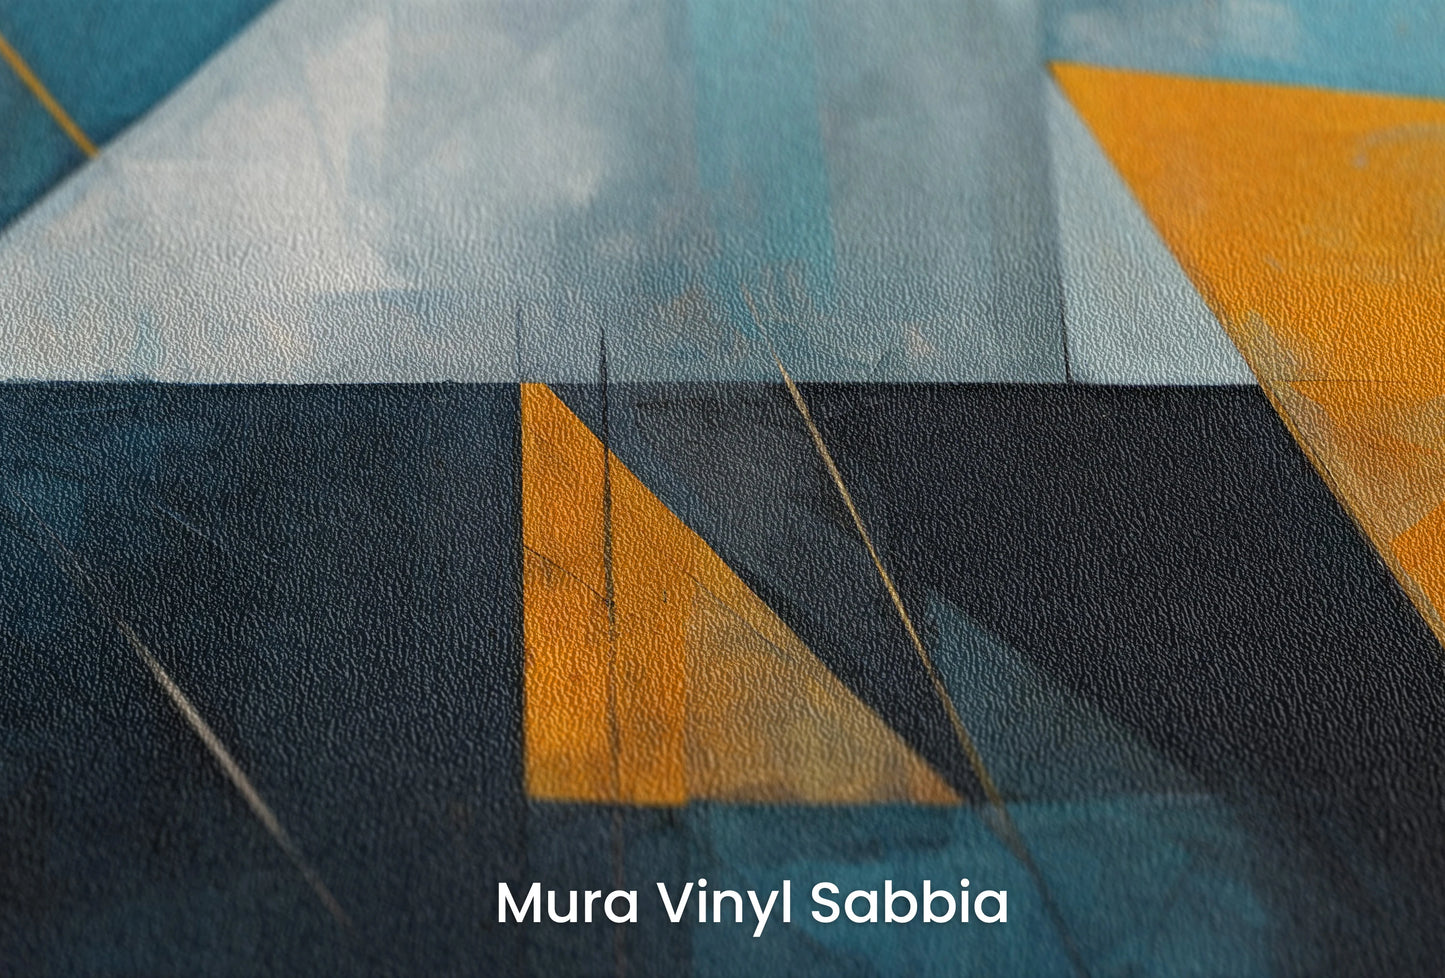 Zbliżenie na artystyczną fototapetę o nazwie Blue Triangle na podłożu Mura Vinyl Sabbia struktura grubego ziarna piasku.